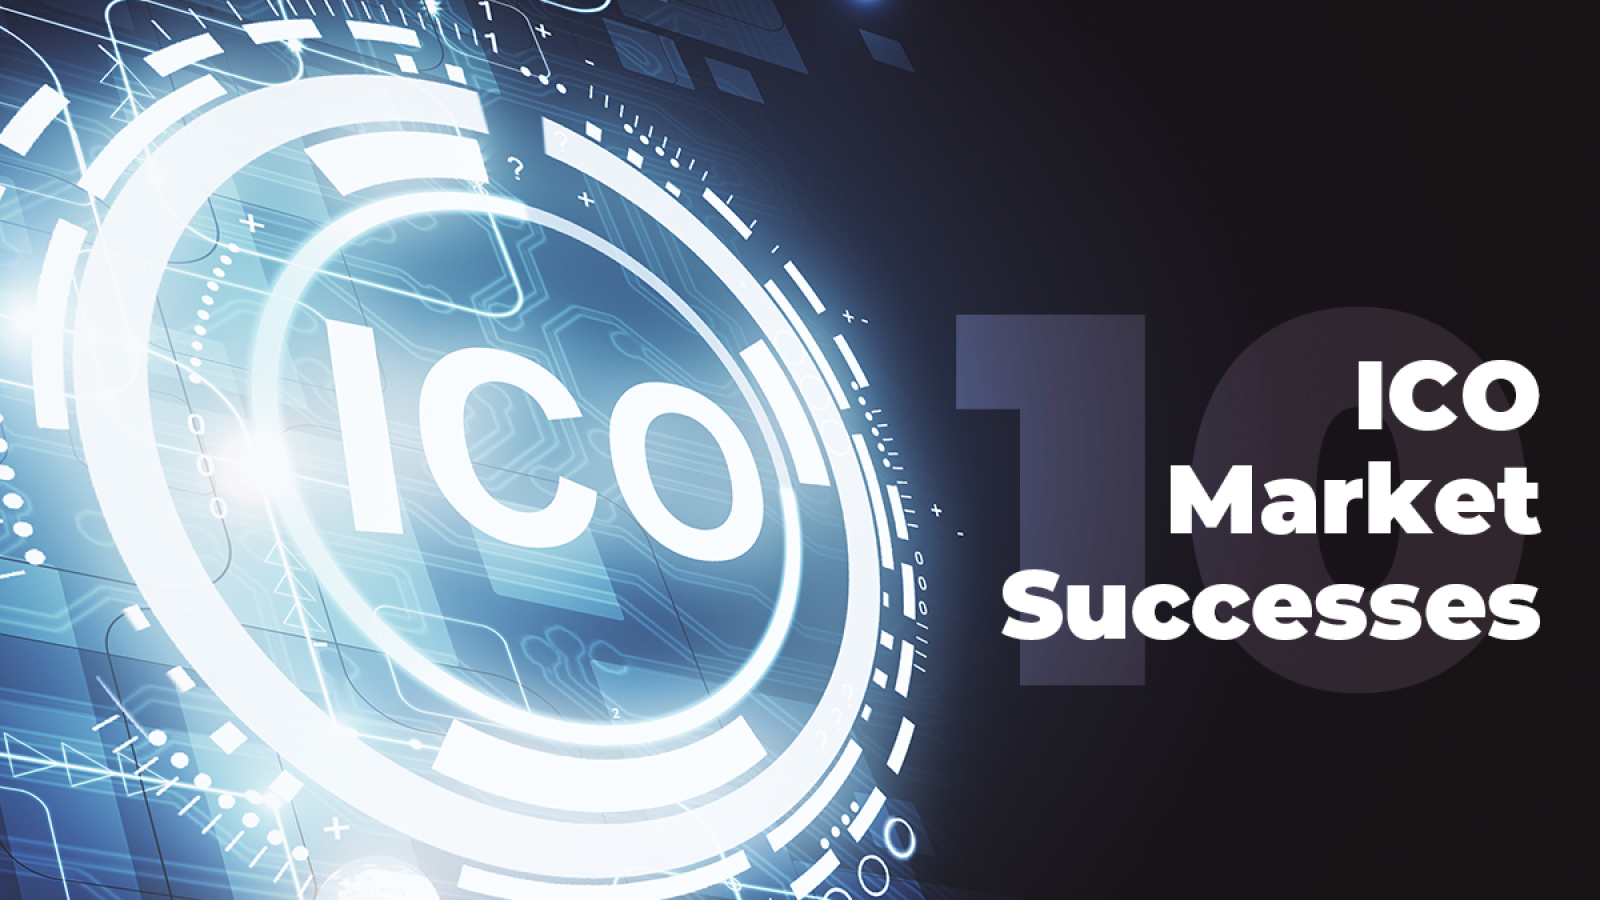 Top 10 ICO Market Successes